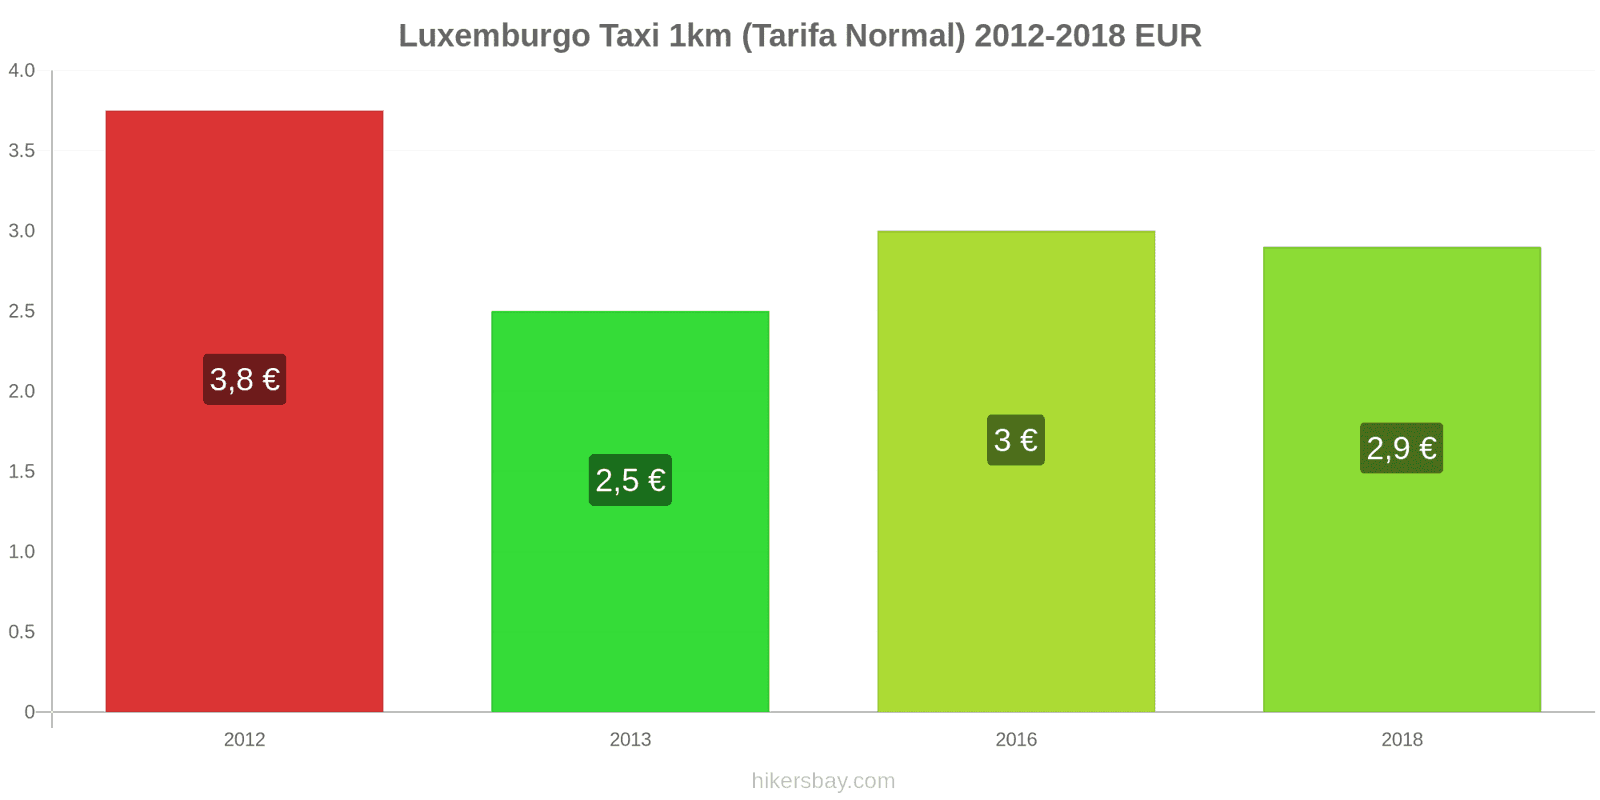 Luxemburgo cambios de precios Taxi 1km (tarifa normal) hikersbay.com